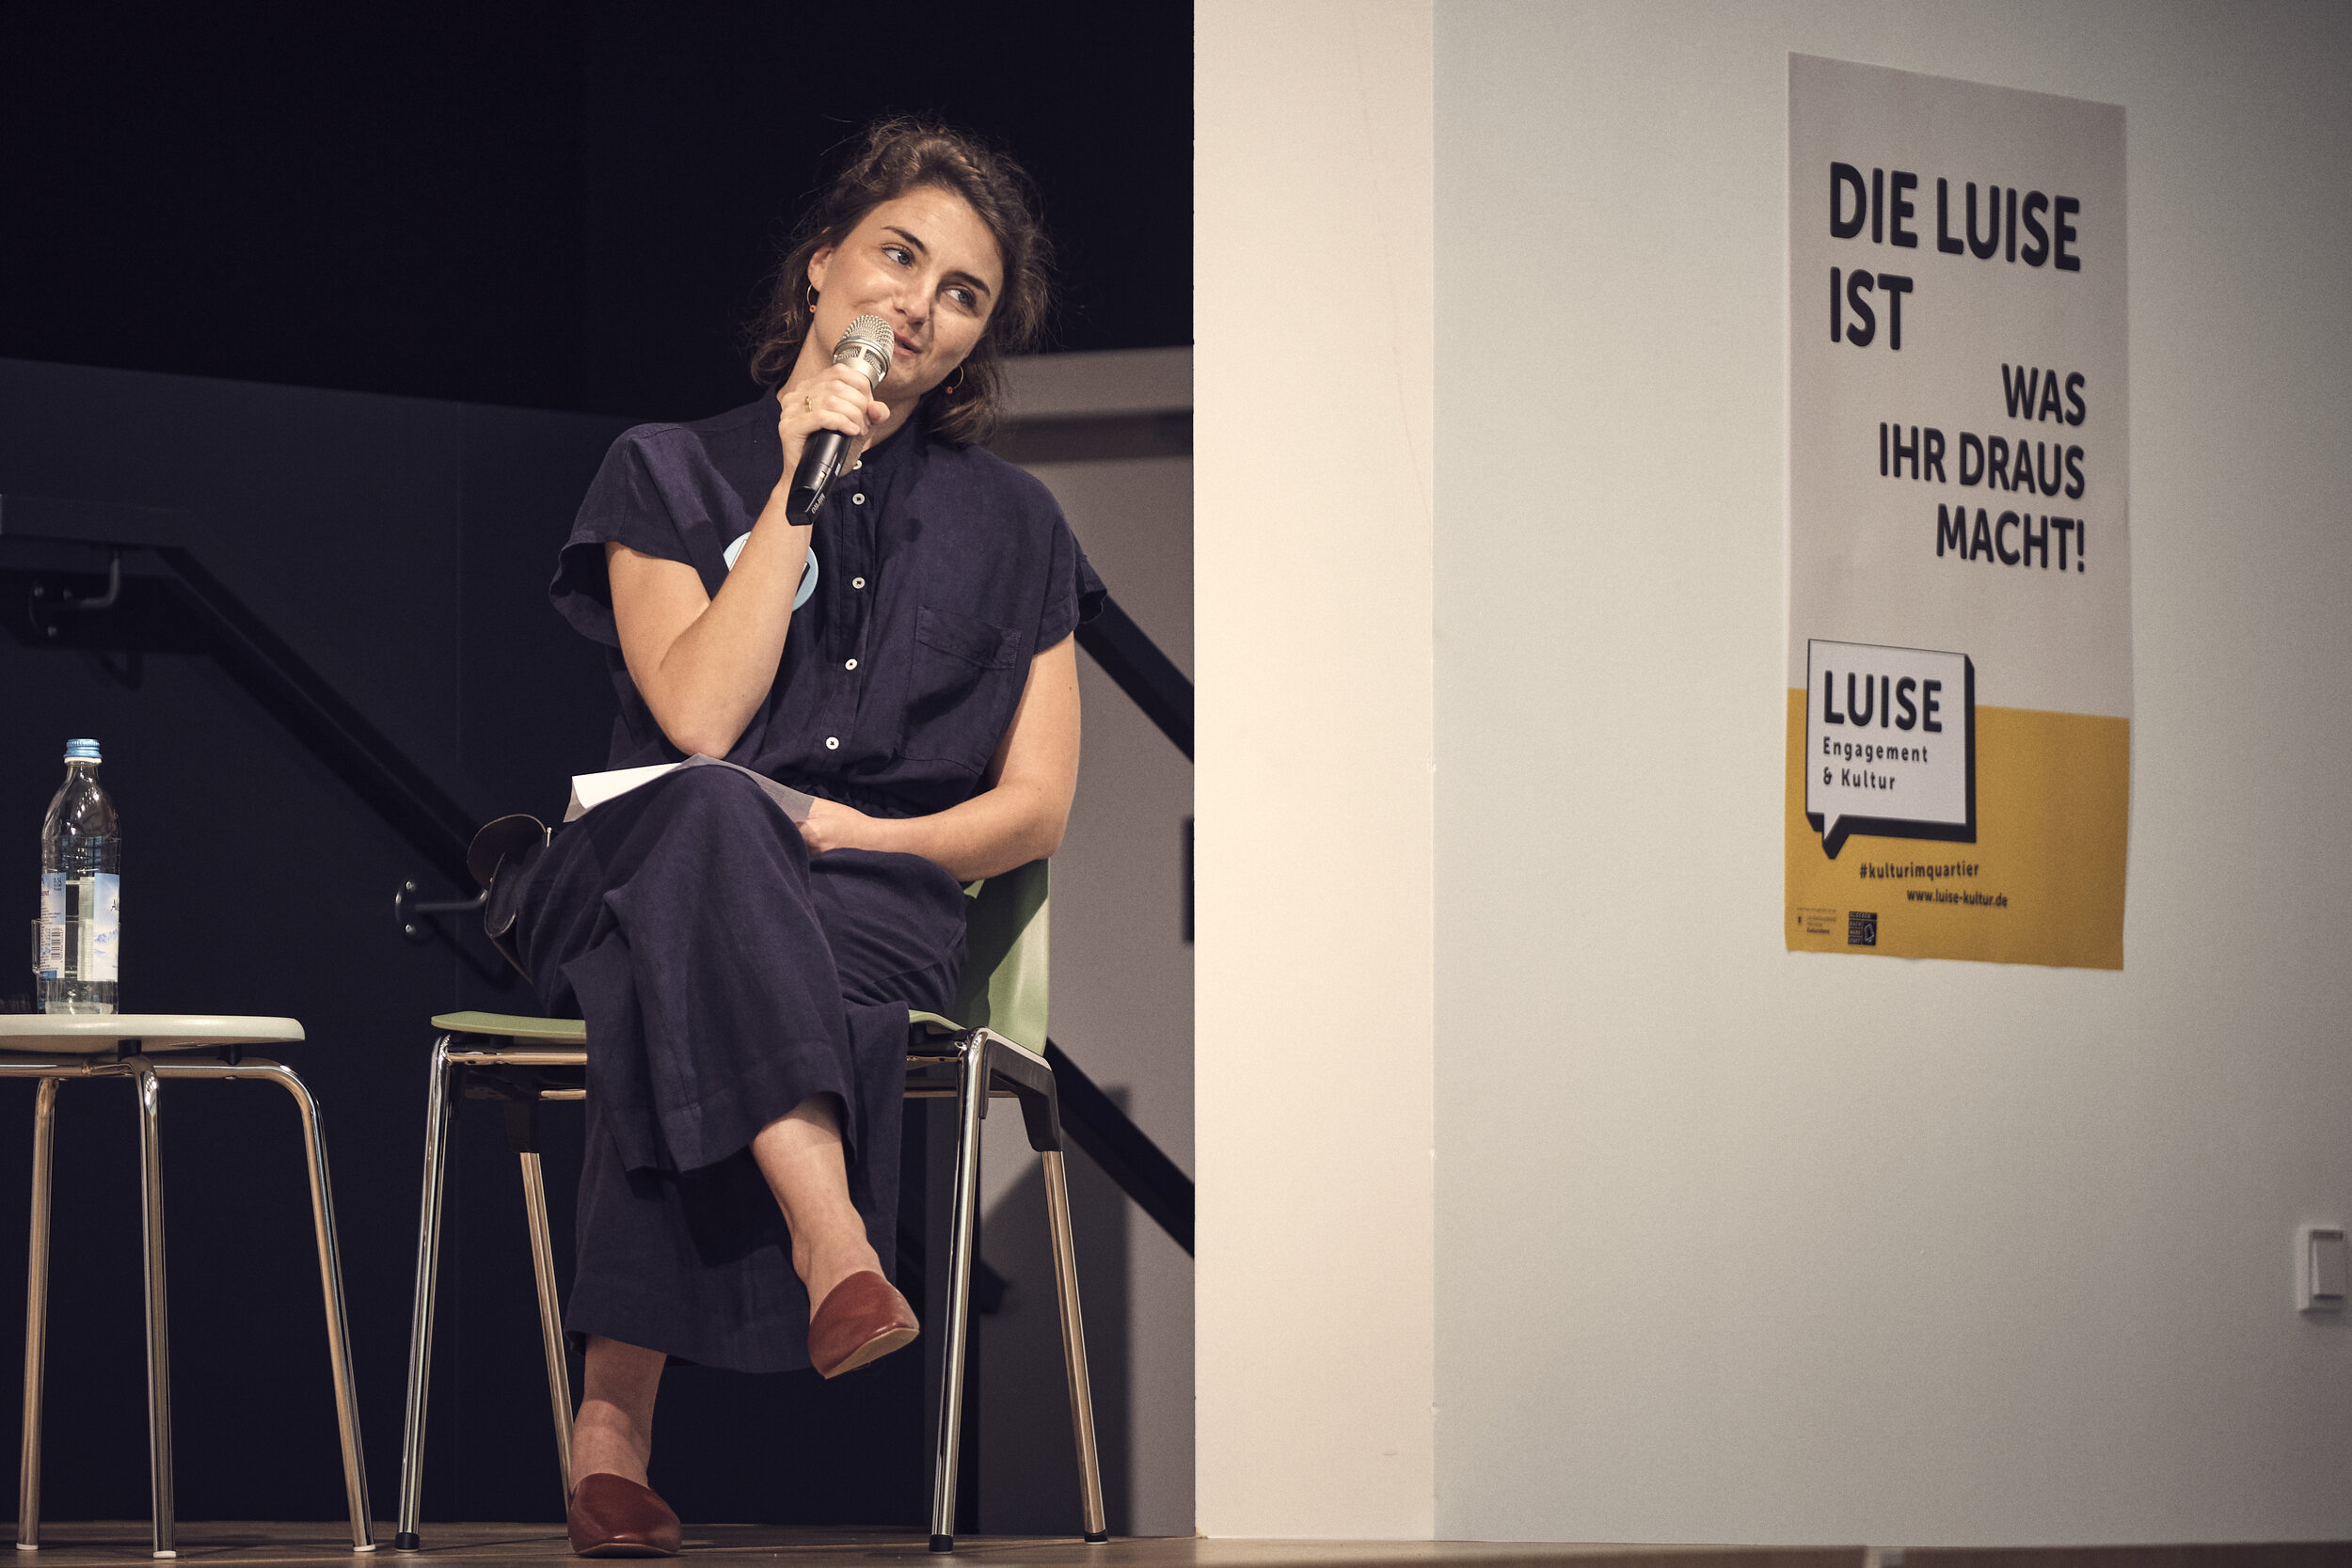  Gesprächsrunde zum Thema Stadtteilkultur. Die Leiterin der Luise, Clara Holzheimer, spricht. 